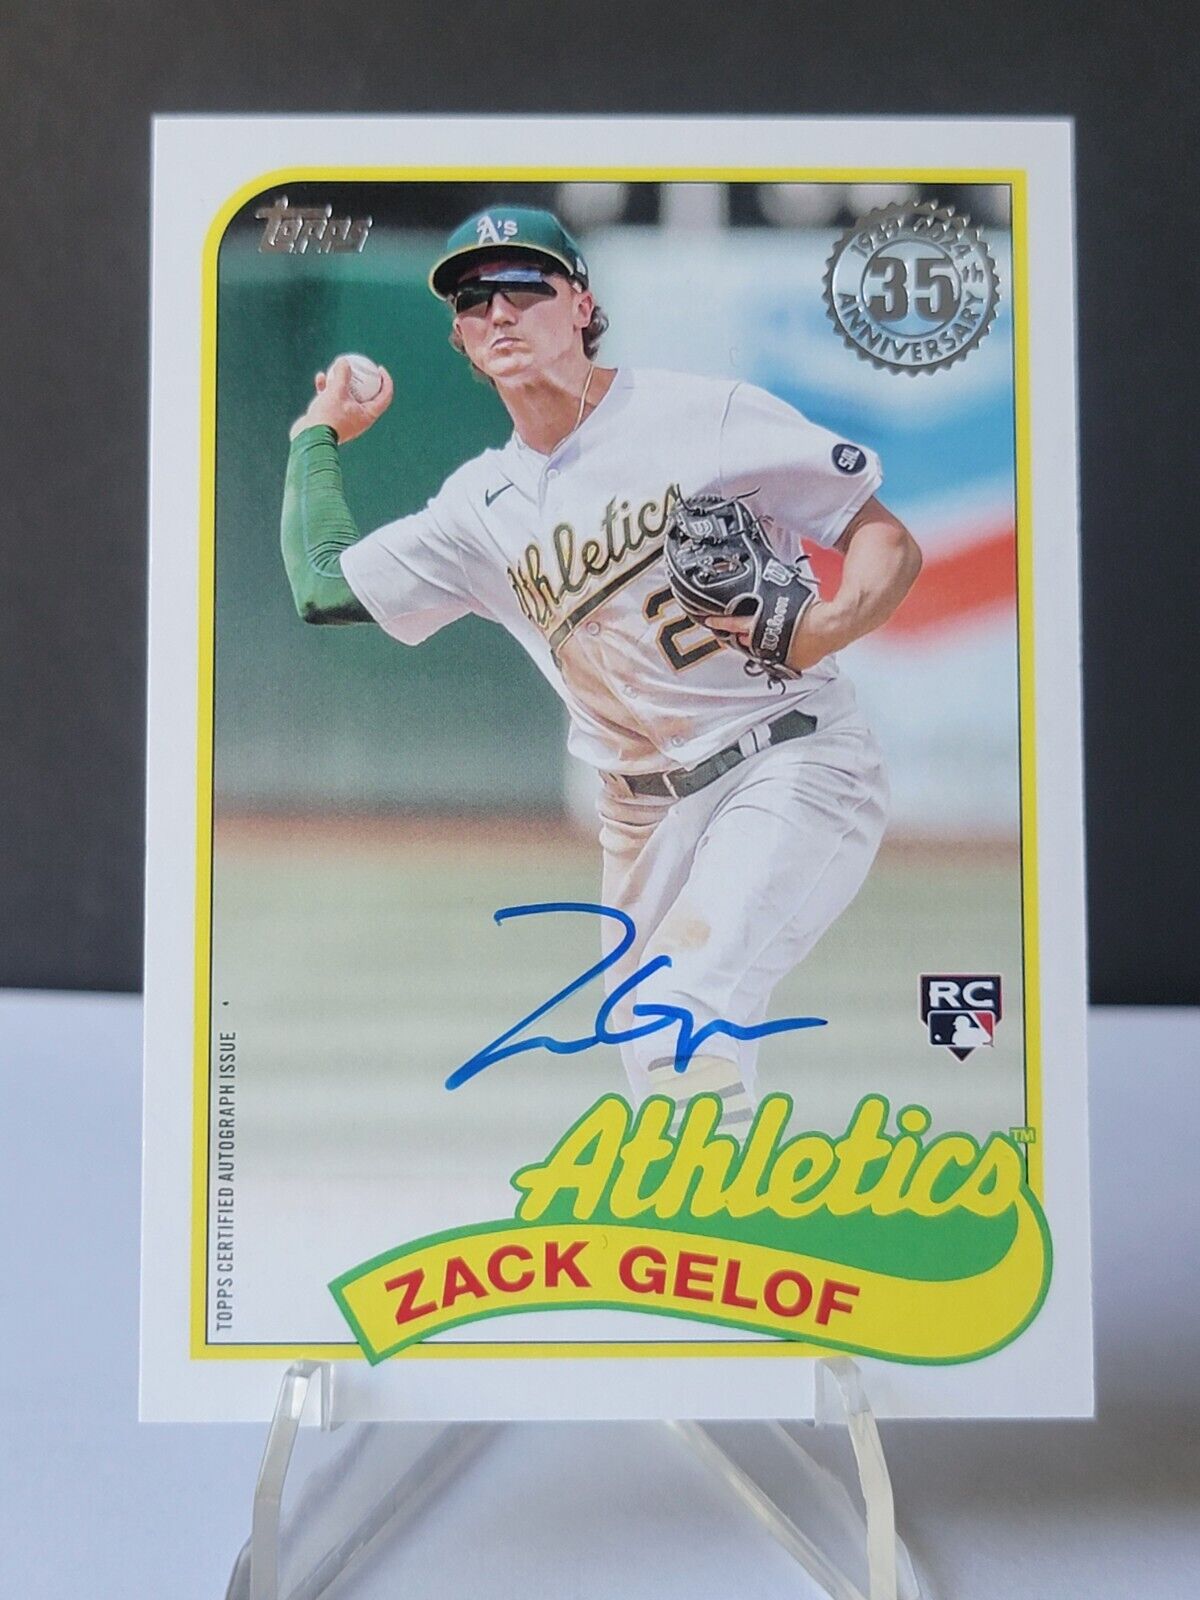 2024 Topps Series 1 Zack Gelof 1989 Baseball Autograph rookie card